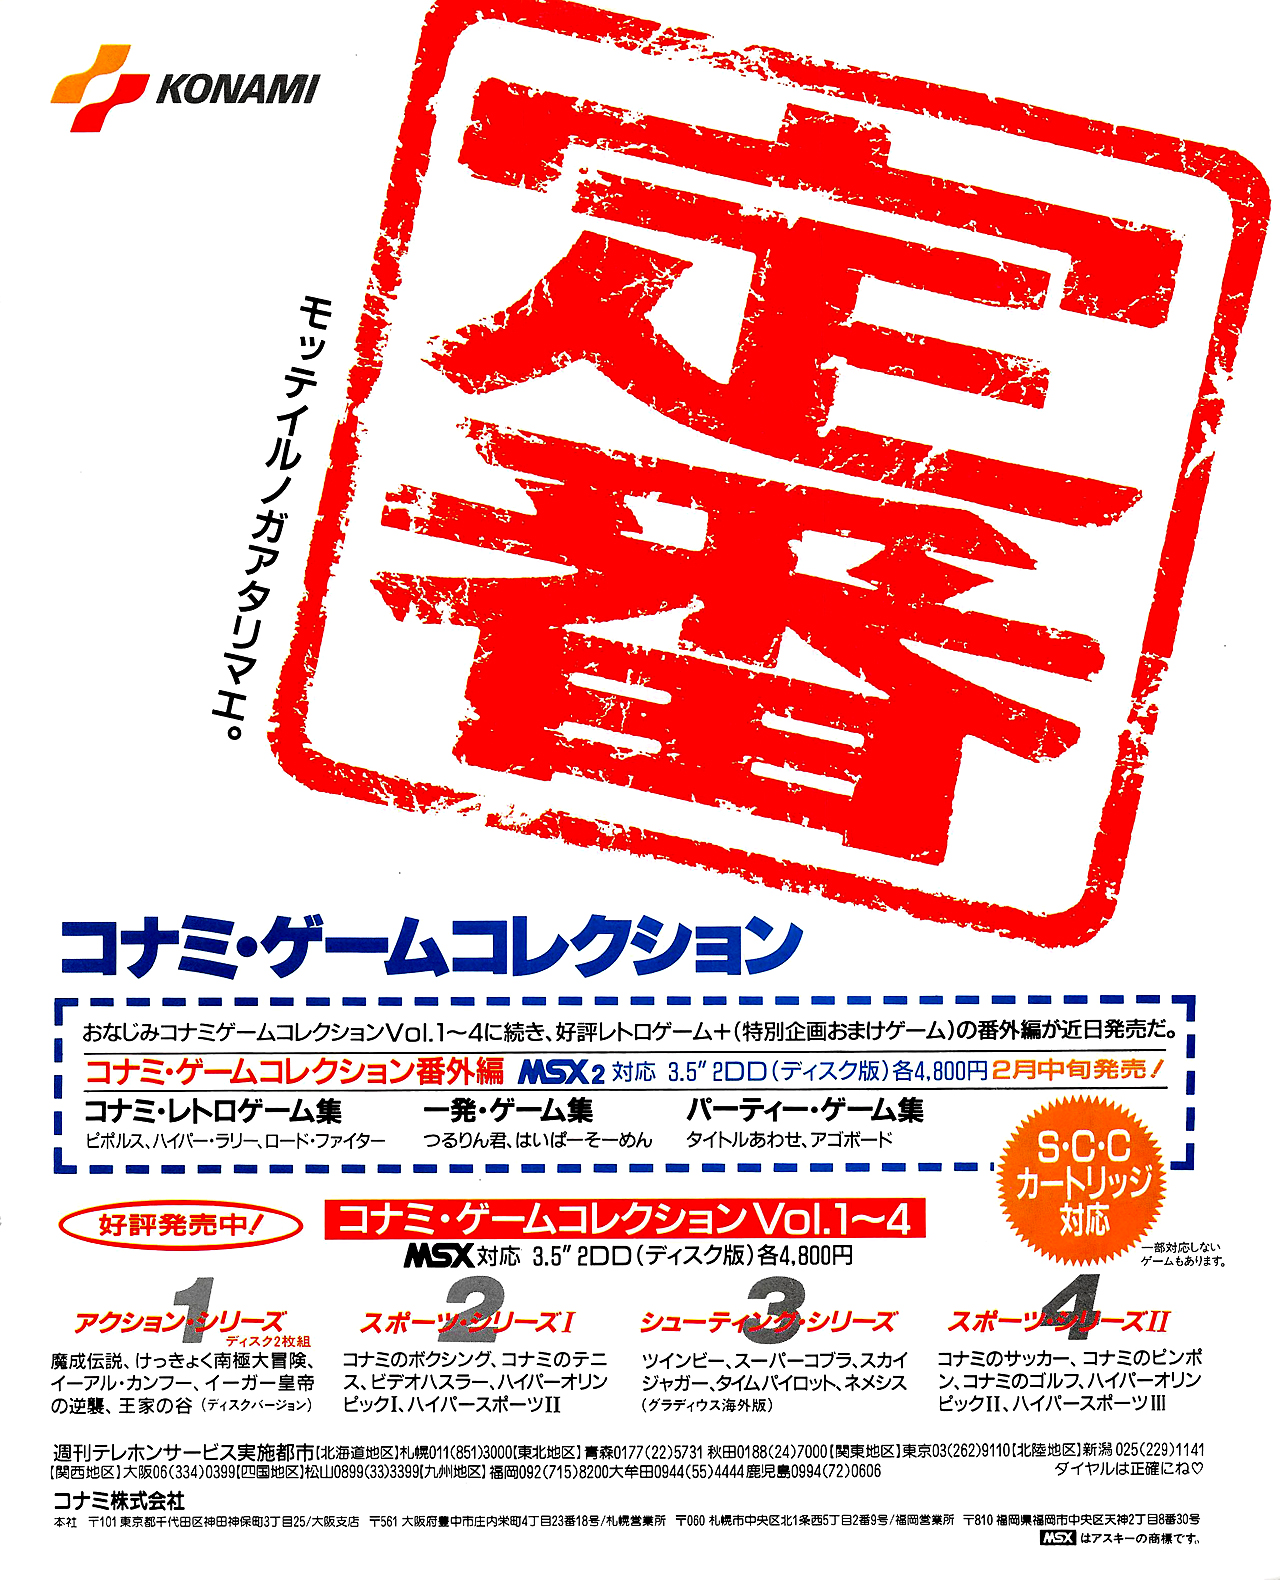 コナミ ゲームコレクションMSX 広告